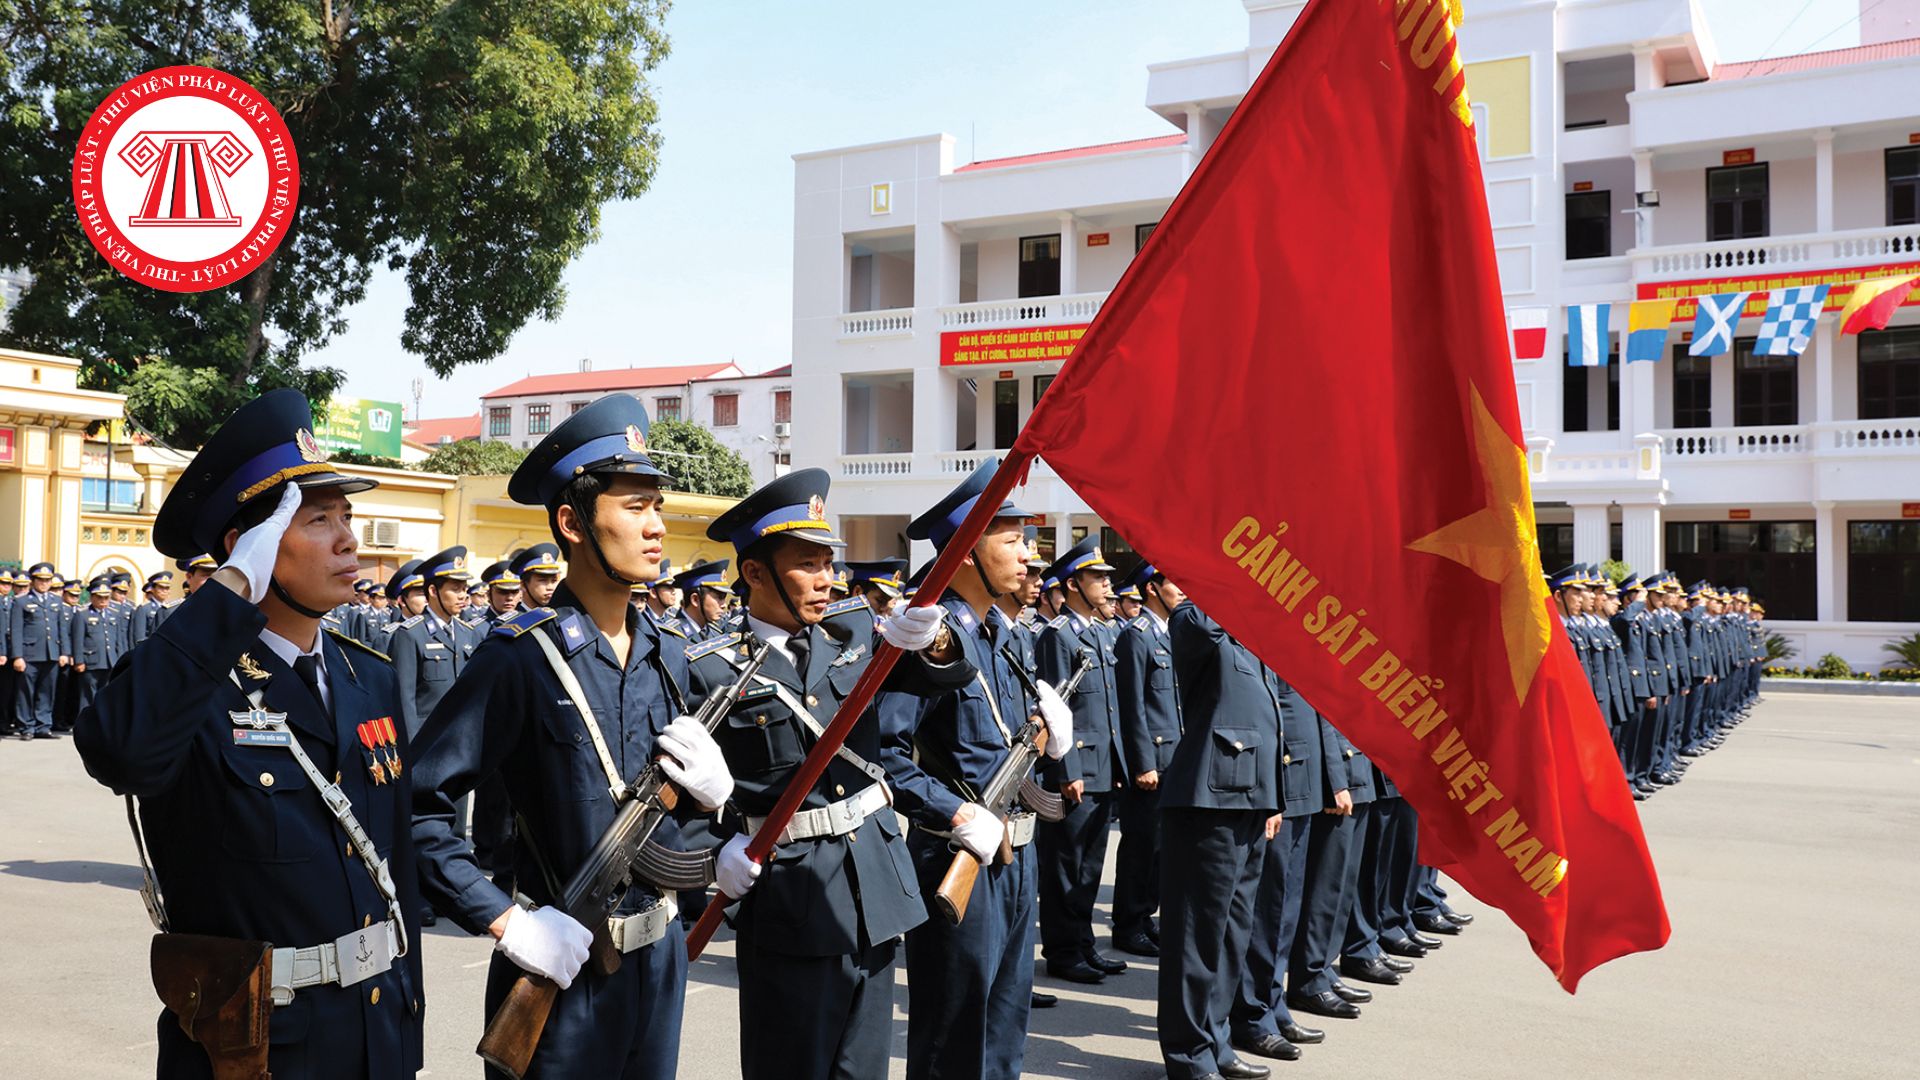 Lễ phục sĩ quan Cảnh sát biển: Sự kiện lễ kỷ niệm phục vụ cảnh sát biển Việt Nam ngày càng được tăng cường và quy mô hơn. Trong lễ kỷ niệm này, sĩ quan cảnh sát được tôn vinh với nhiều hoạt động văn hóa và truyền thống thú vị, từ đó, tăng cường lòng yêu nước và kính trọng đối với lực lượng cảnh sát biển.